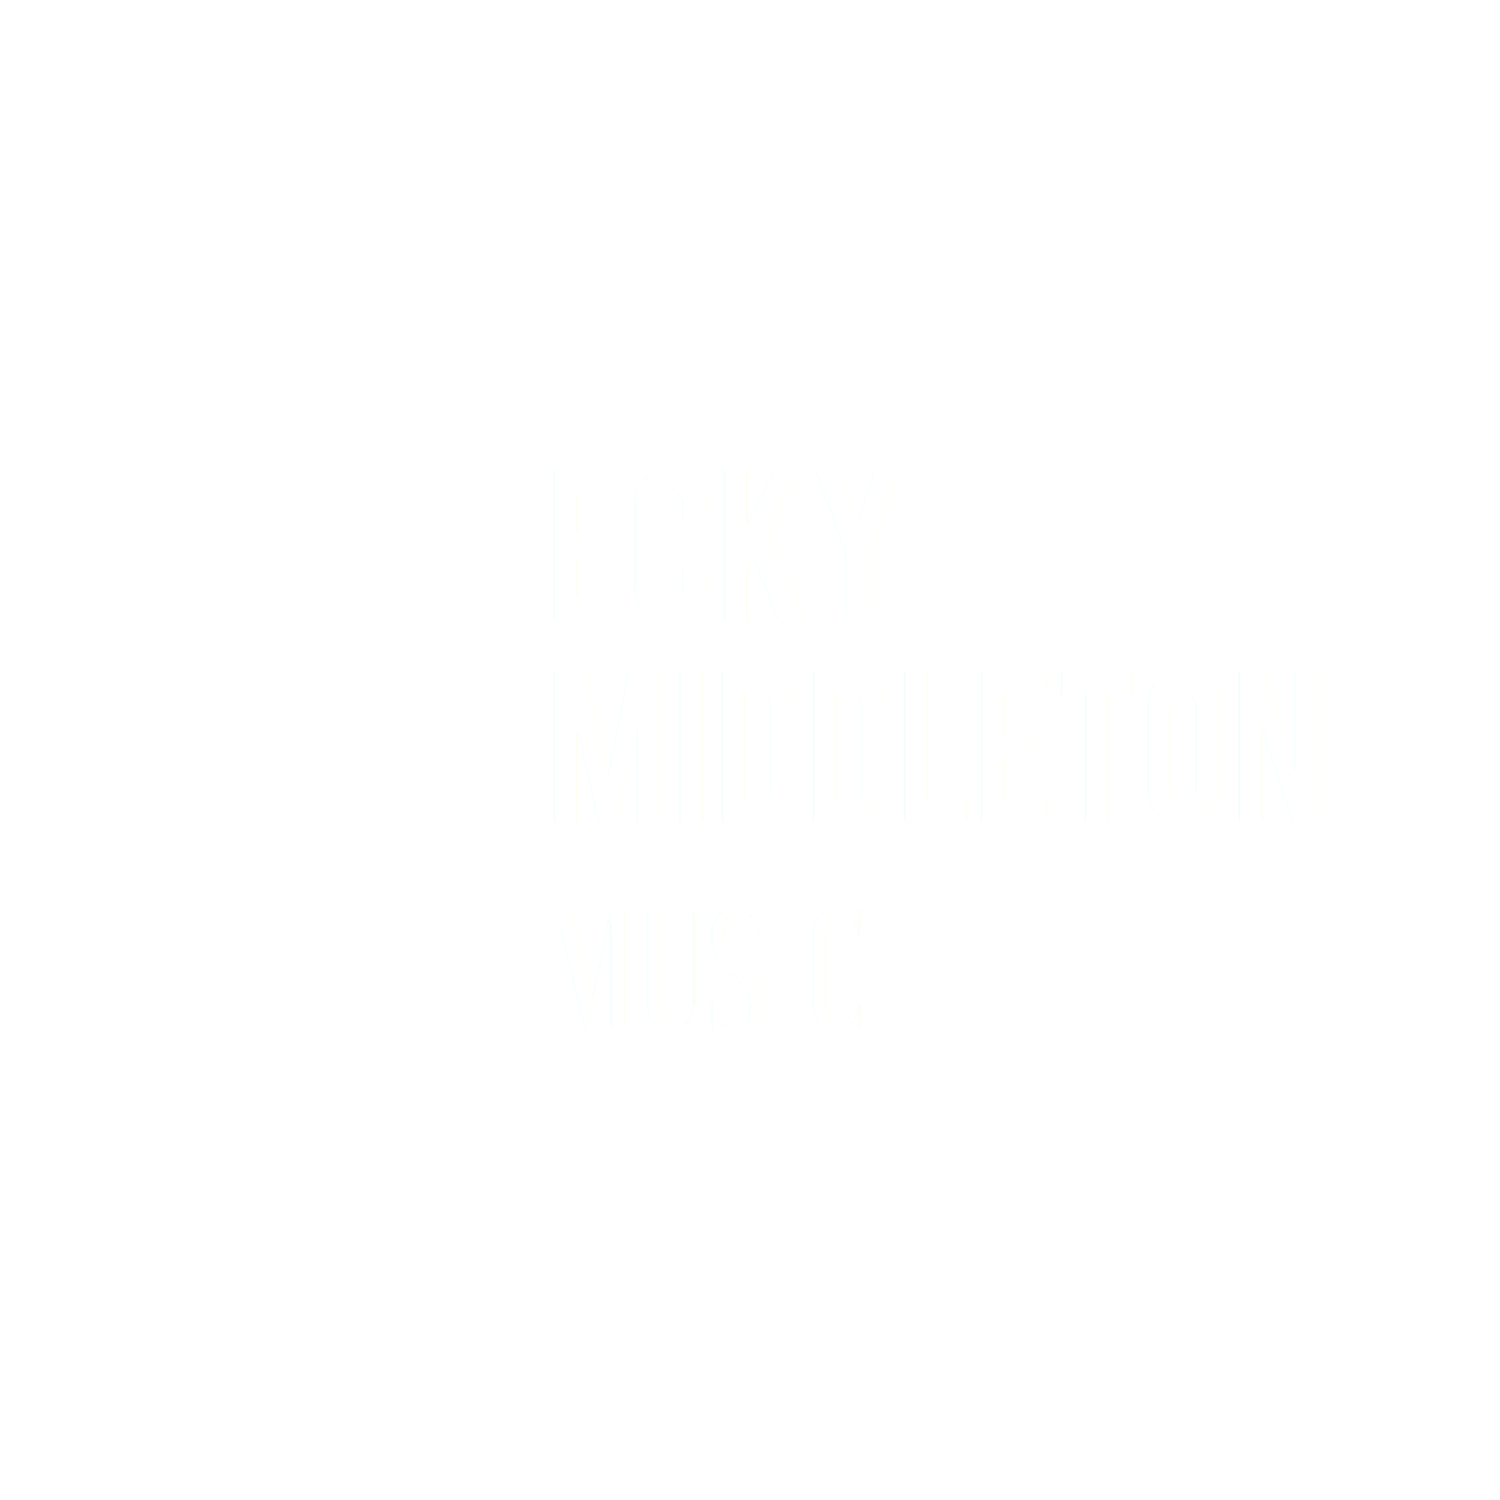 Becky Middleton Music